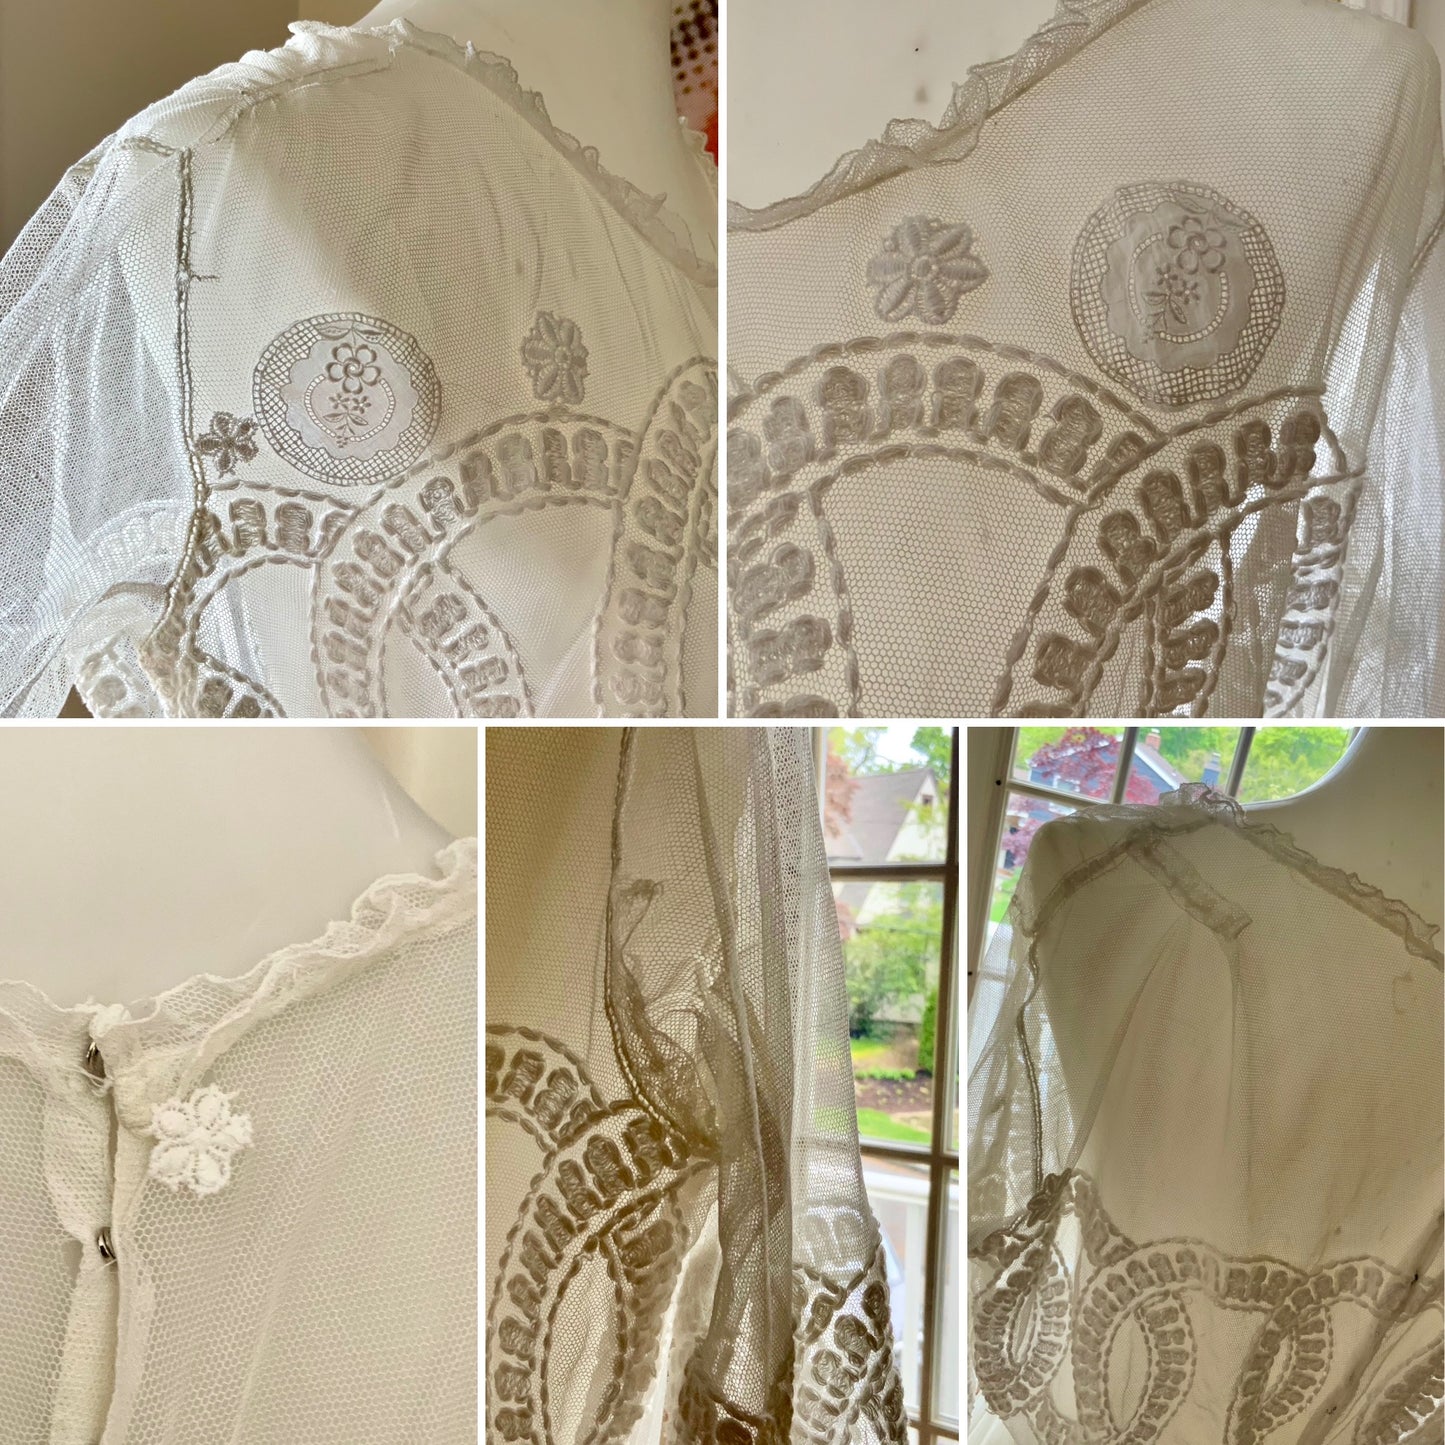 Edwardian Tulle Dress - 1910 - Bridal